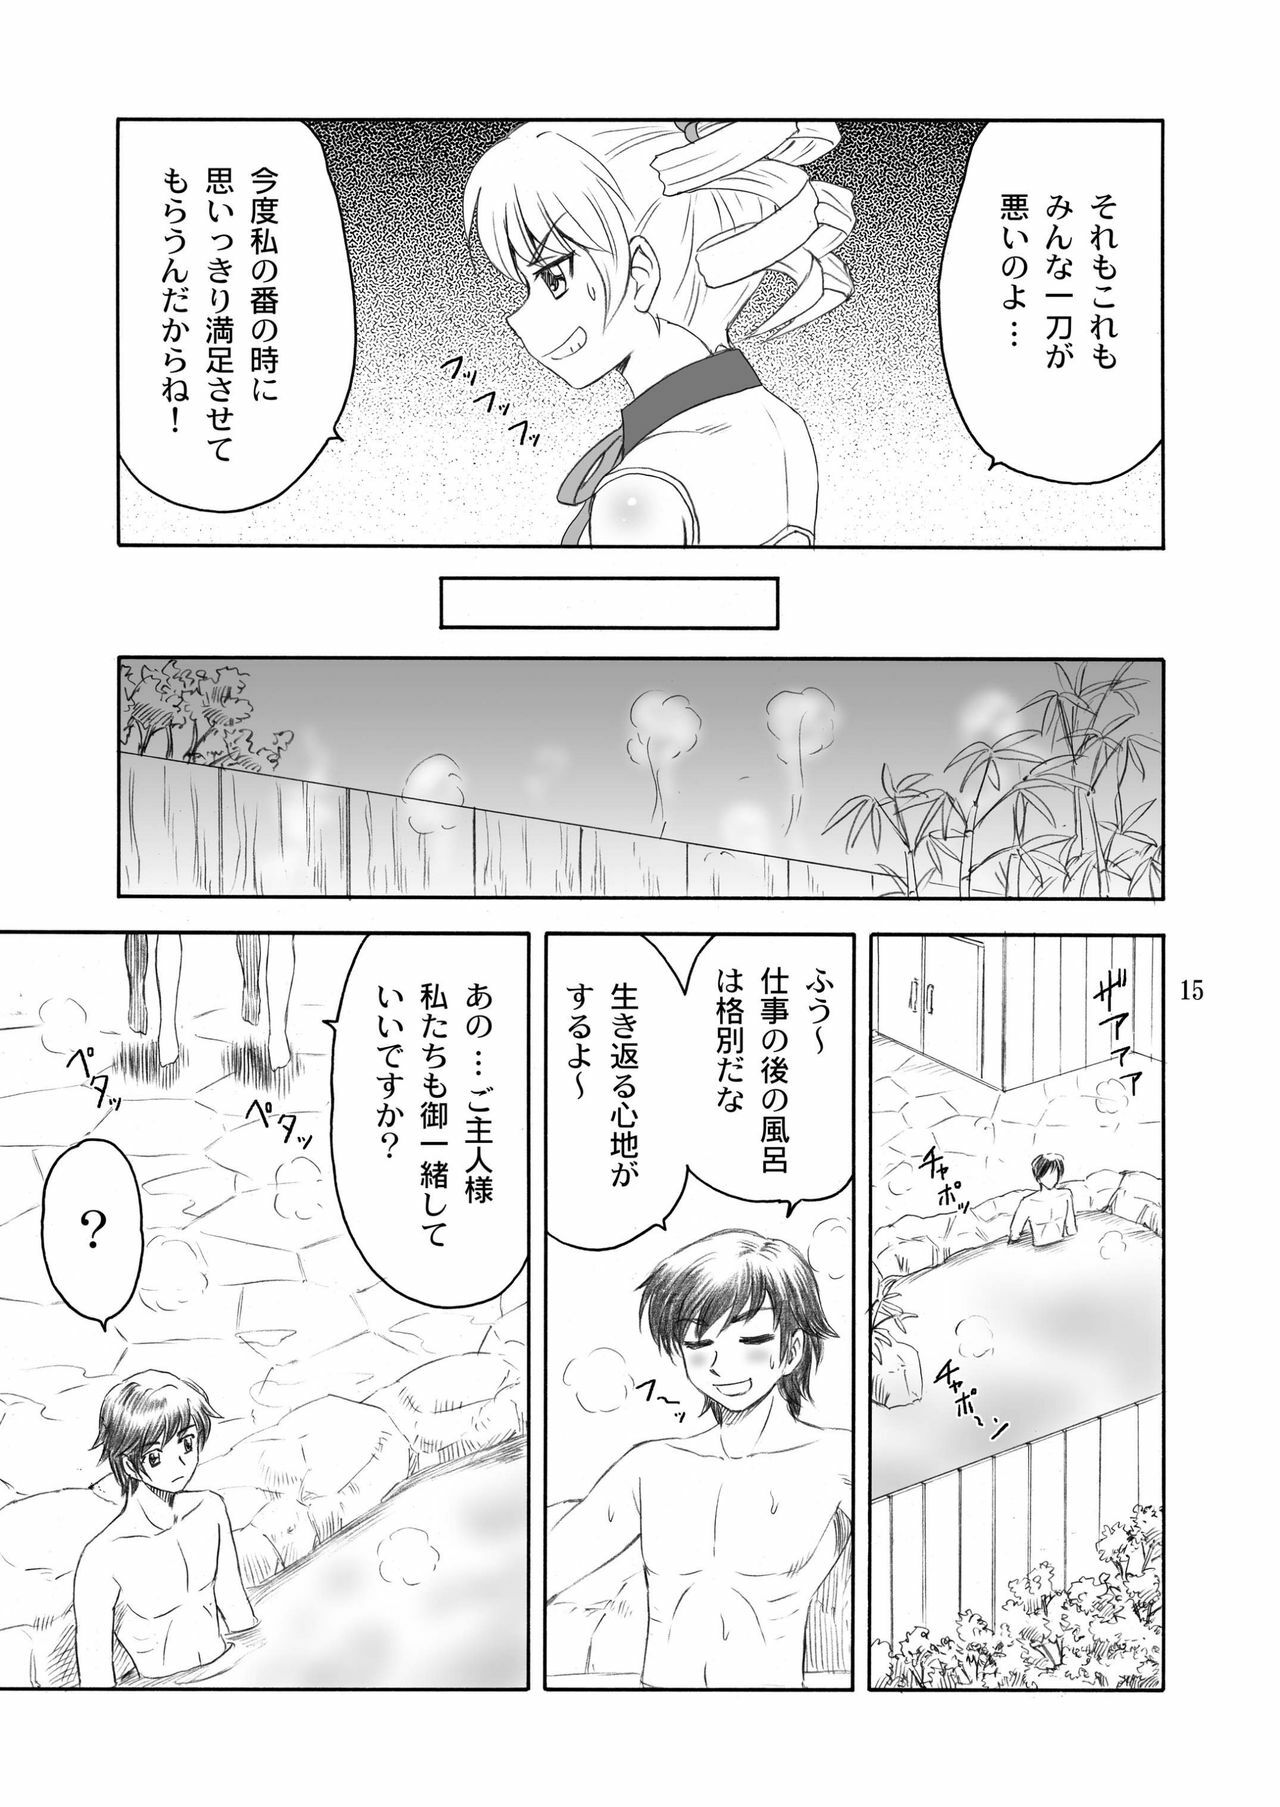 [Yasurin-do (Yasu Rintarou)] Syuri Hina (Koihime Musou) page 15 full